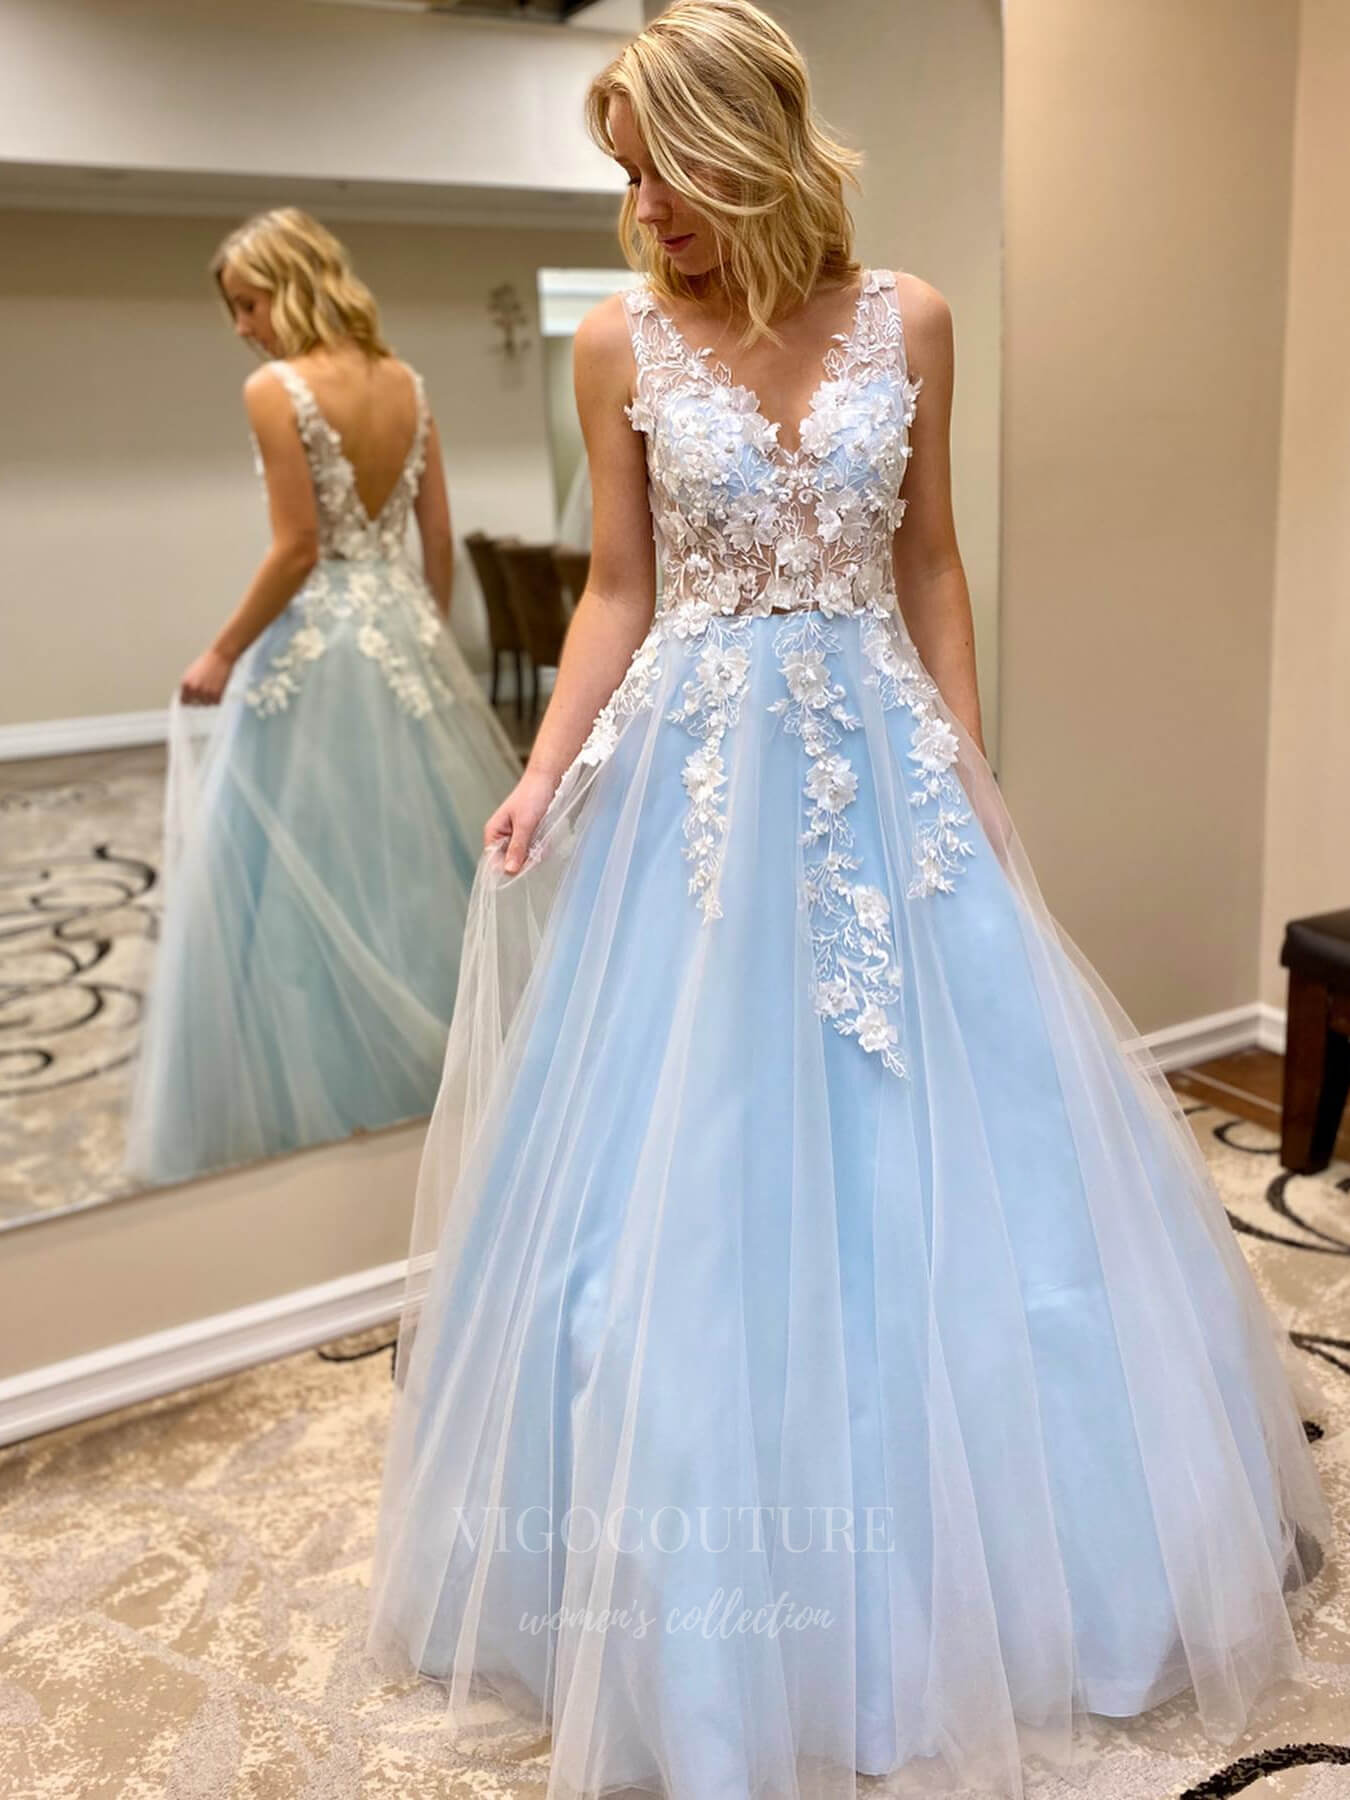 vigocouture-Lace Applique Wide Strap A-Line Prom Dress 20953-Prom Dresses-vigocouture-Light Blue-US2-